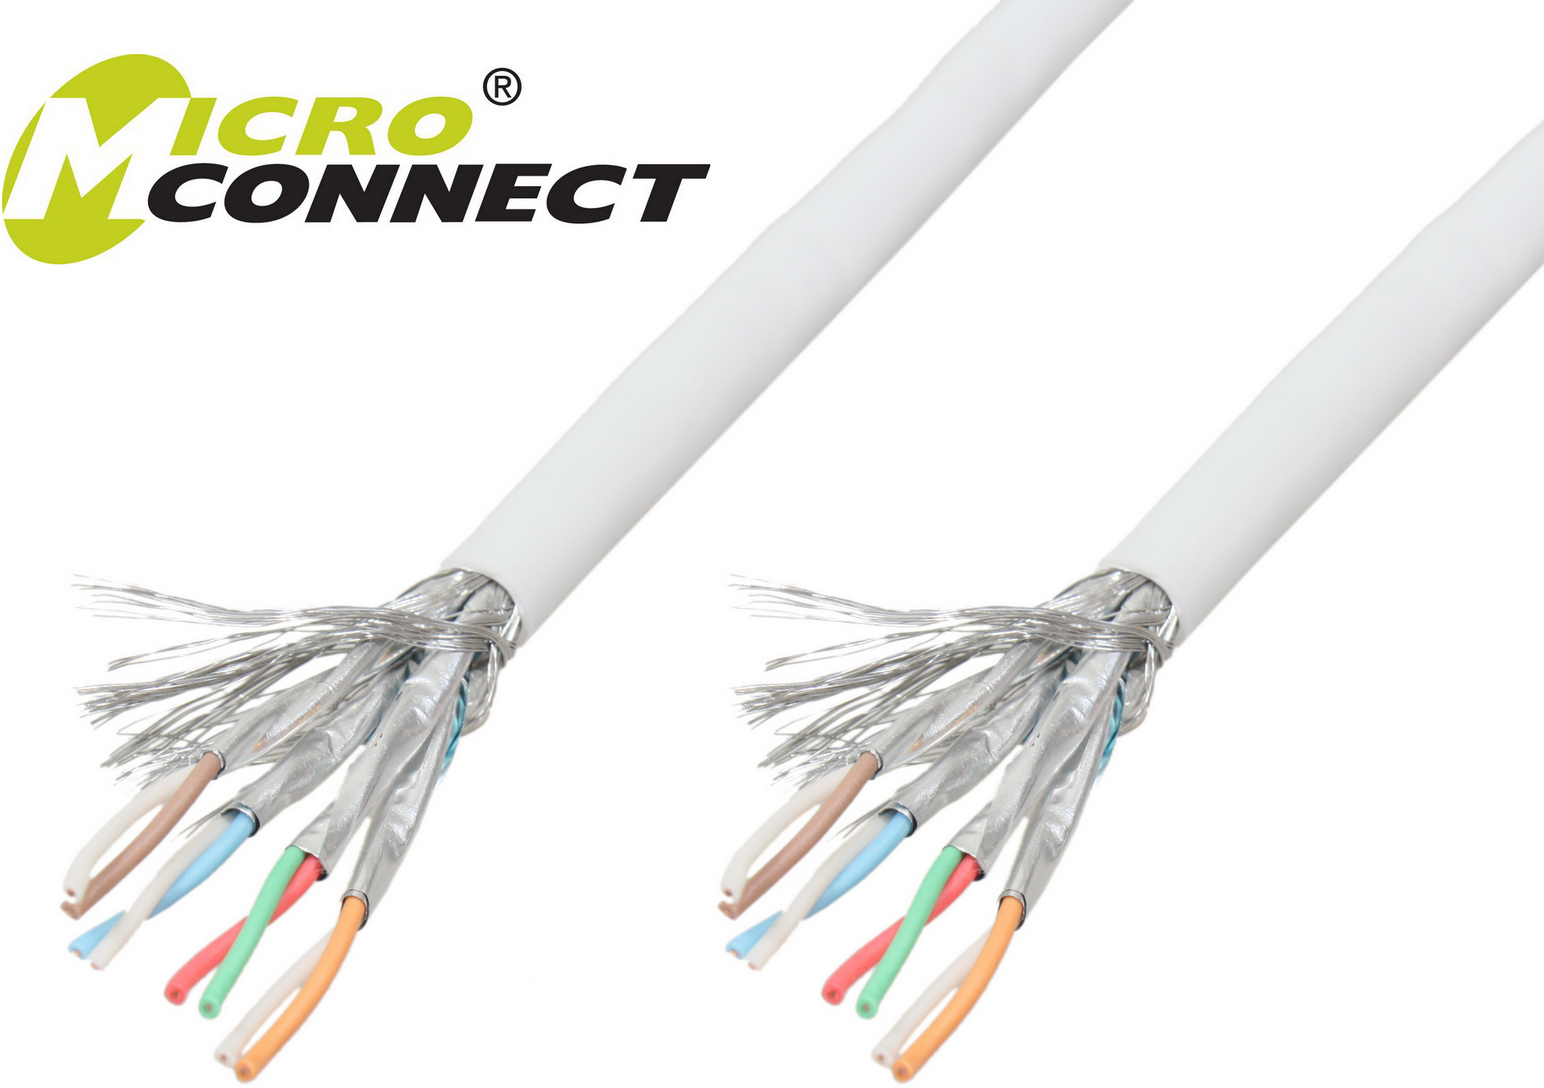 Zdjęcia - Kabel Microconnect  instalacyjny SFTP, CAT6, LSZH, 305m  (KAB013-305)